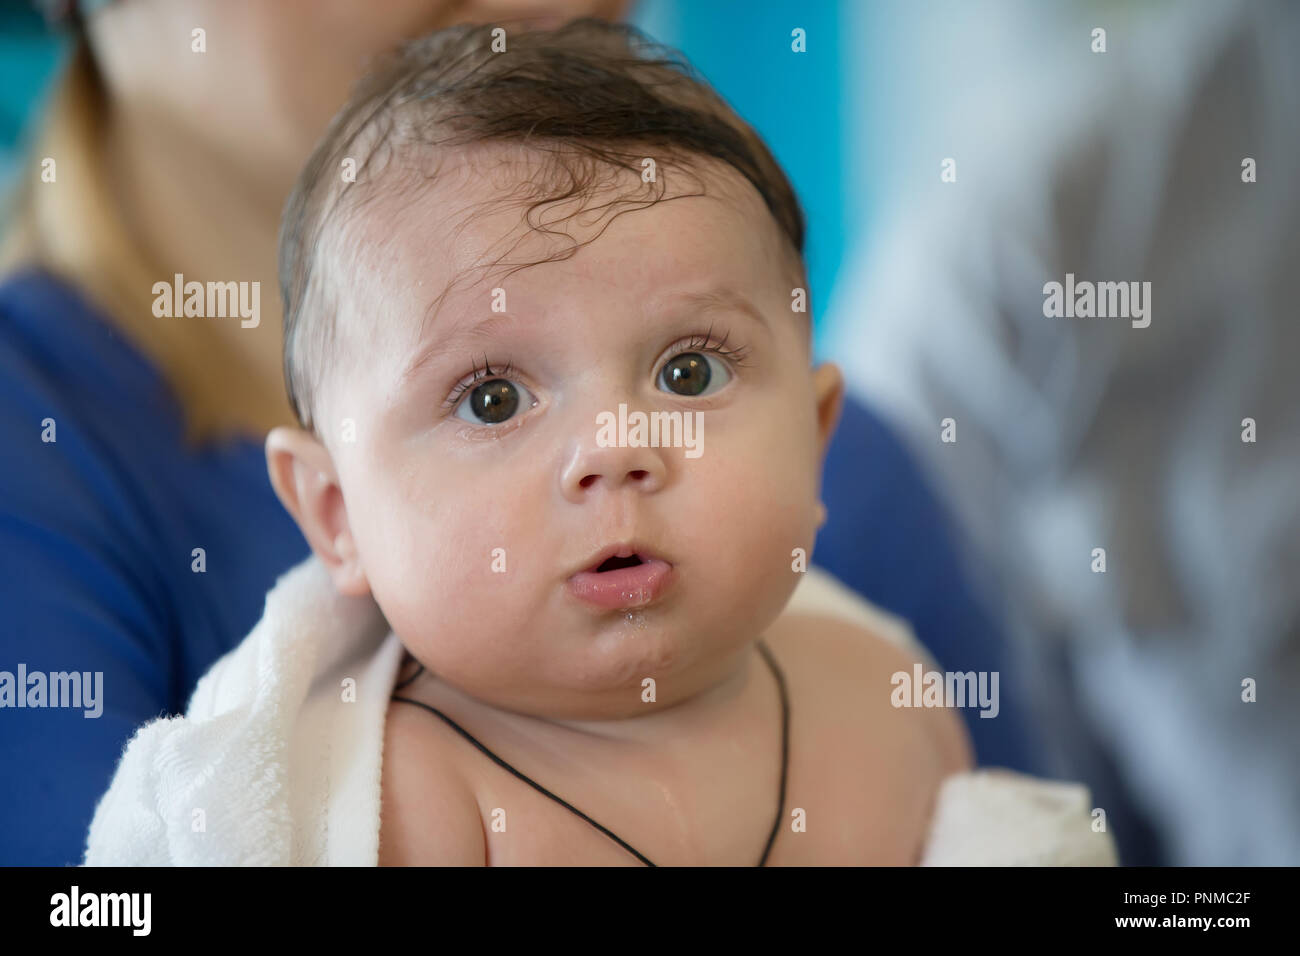 Cara de bebé con ojos ojivales Foto de stock